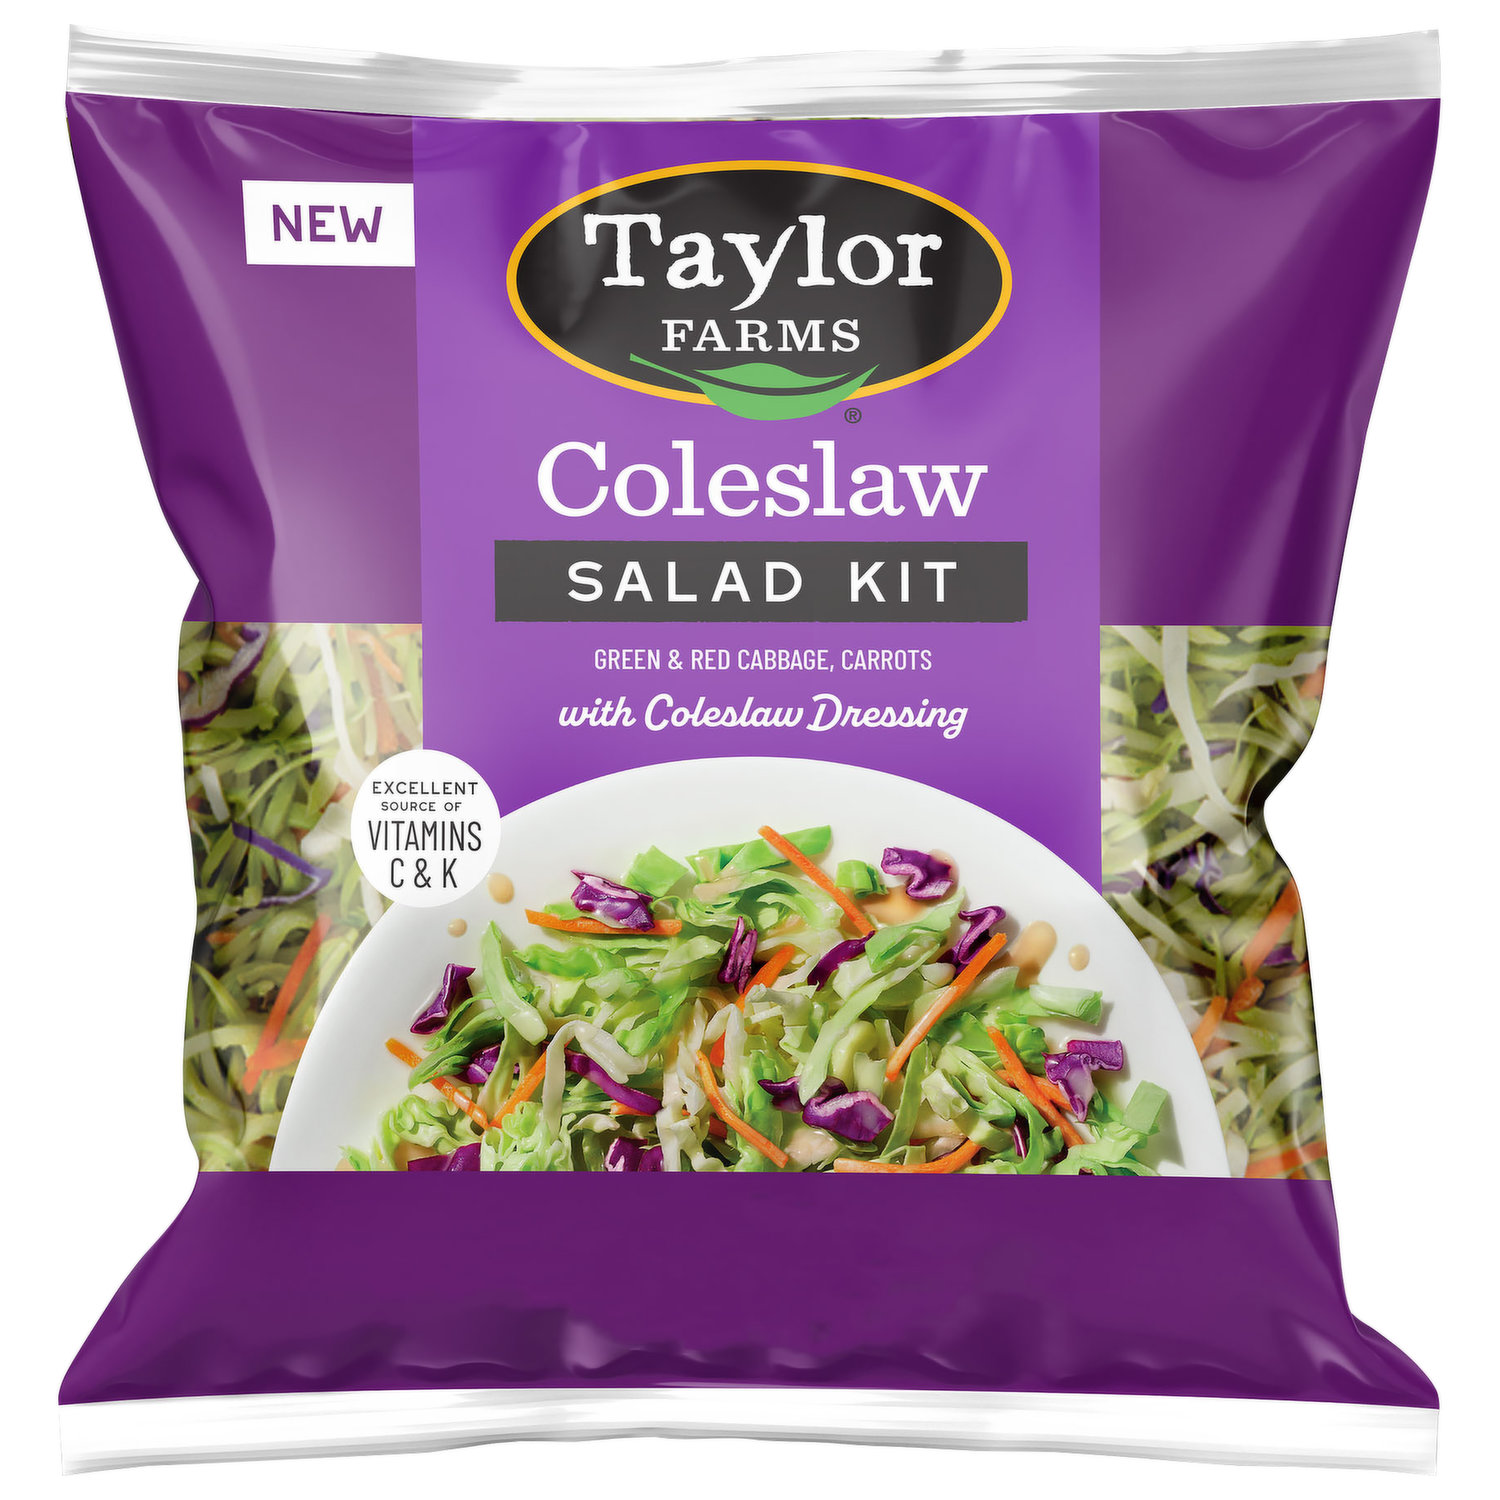 Exchange Select Disposable Containers Soup Salad Purple Lids 5 Pk